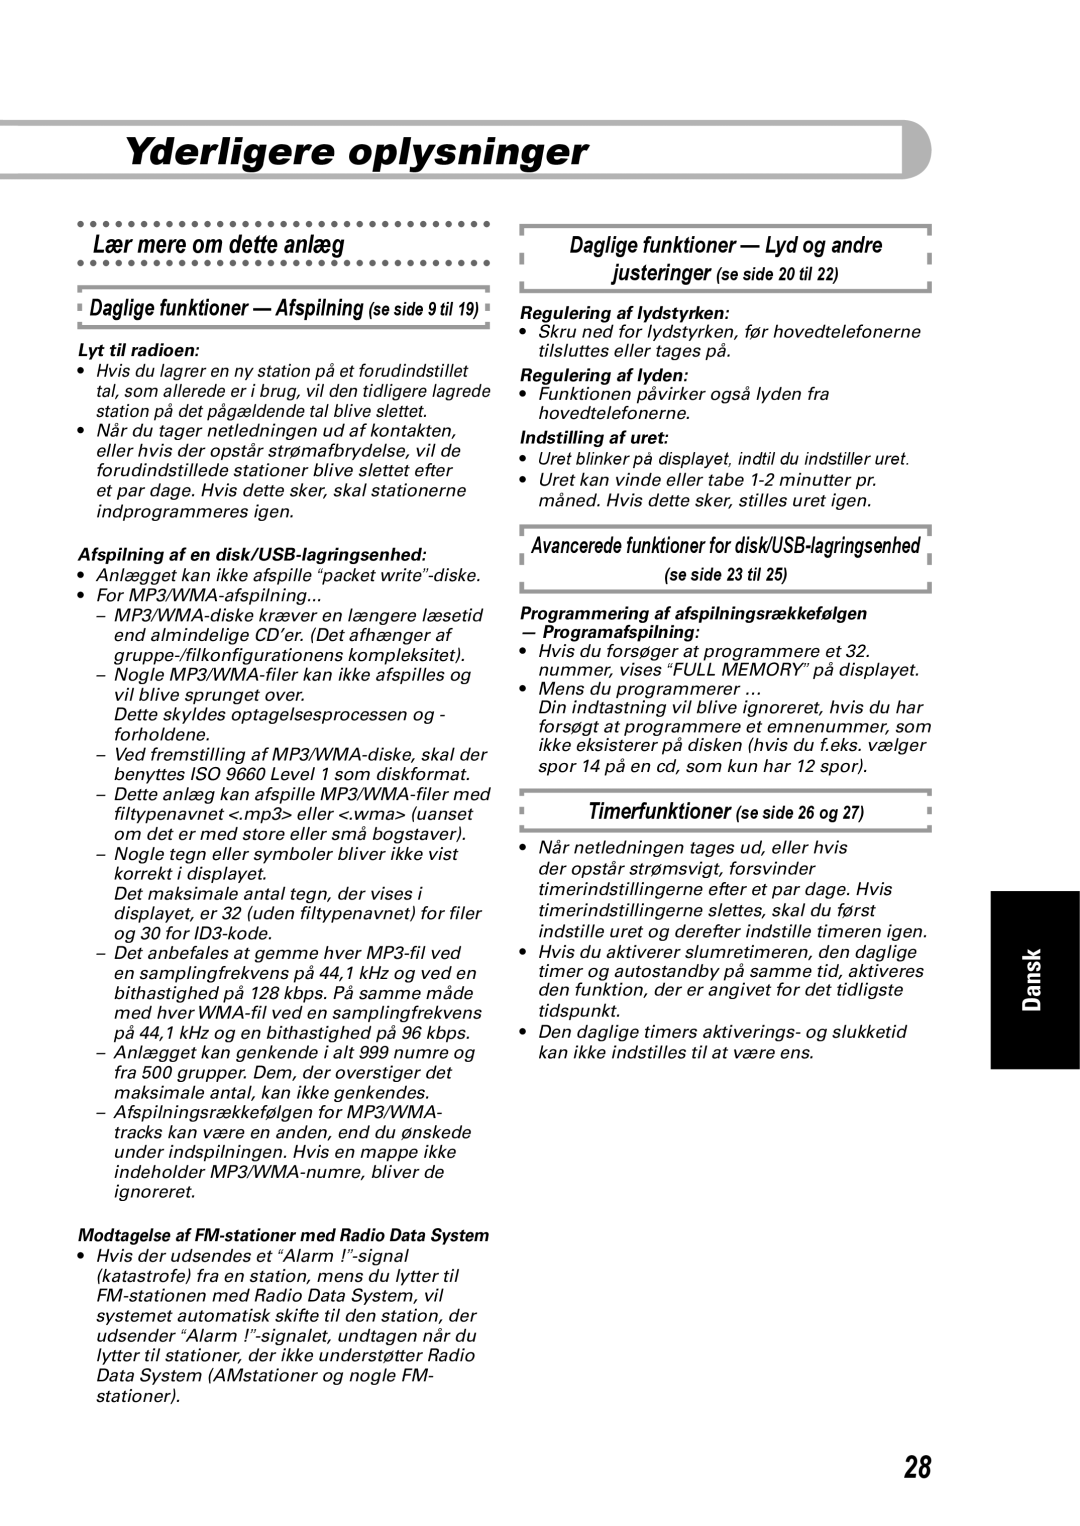 JVC SP-UXEP25 manual Yderligere oplysninger, Lær mere om dette anlæg, Daglige funktioner - Afspilning se side 9 til, Dansk 